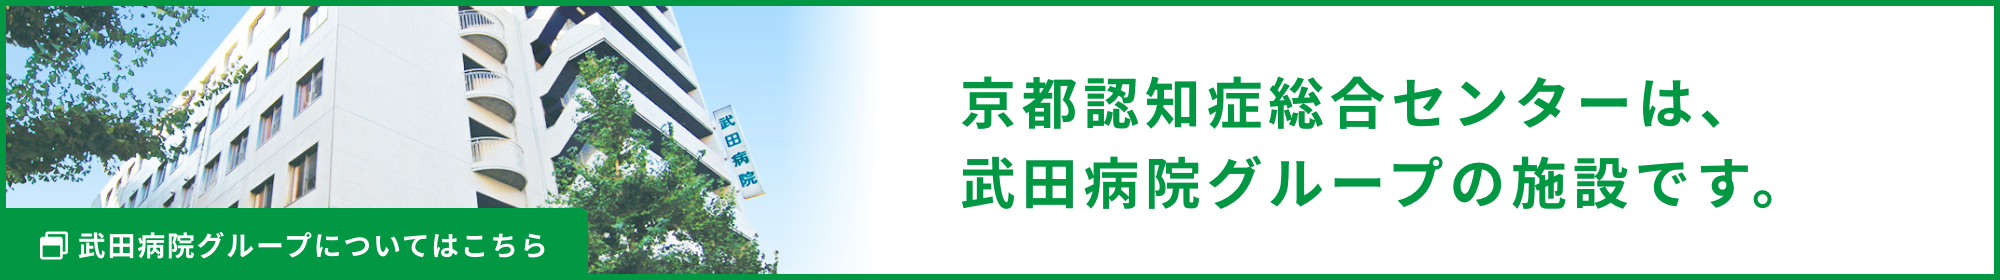 京都認知症総合センターは、武田病院グループの関連施設です。